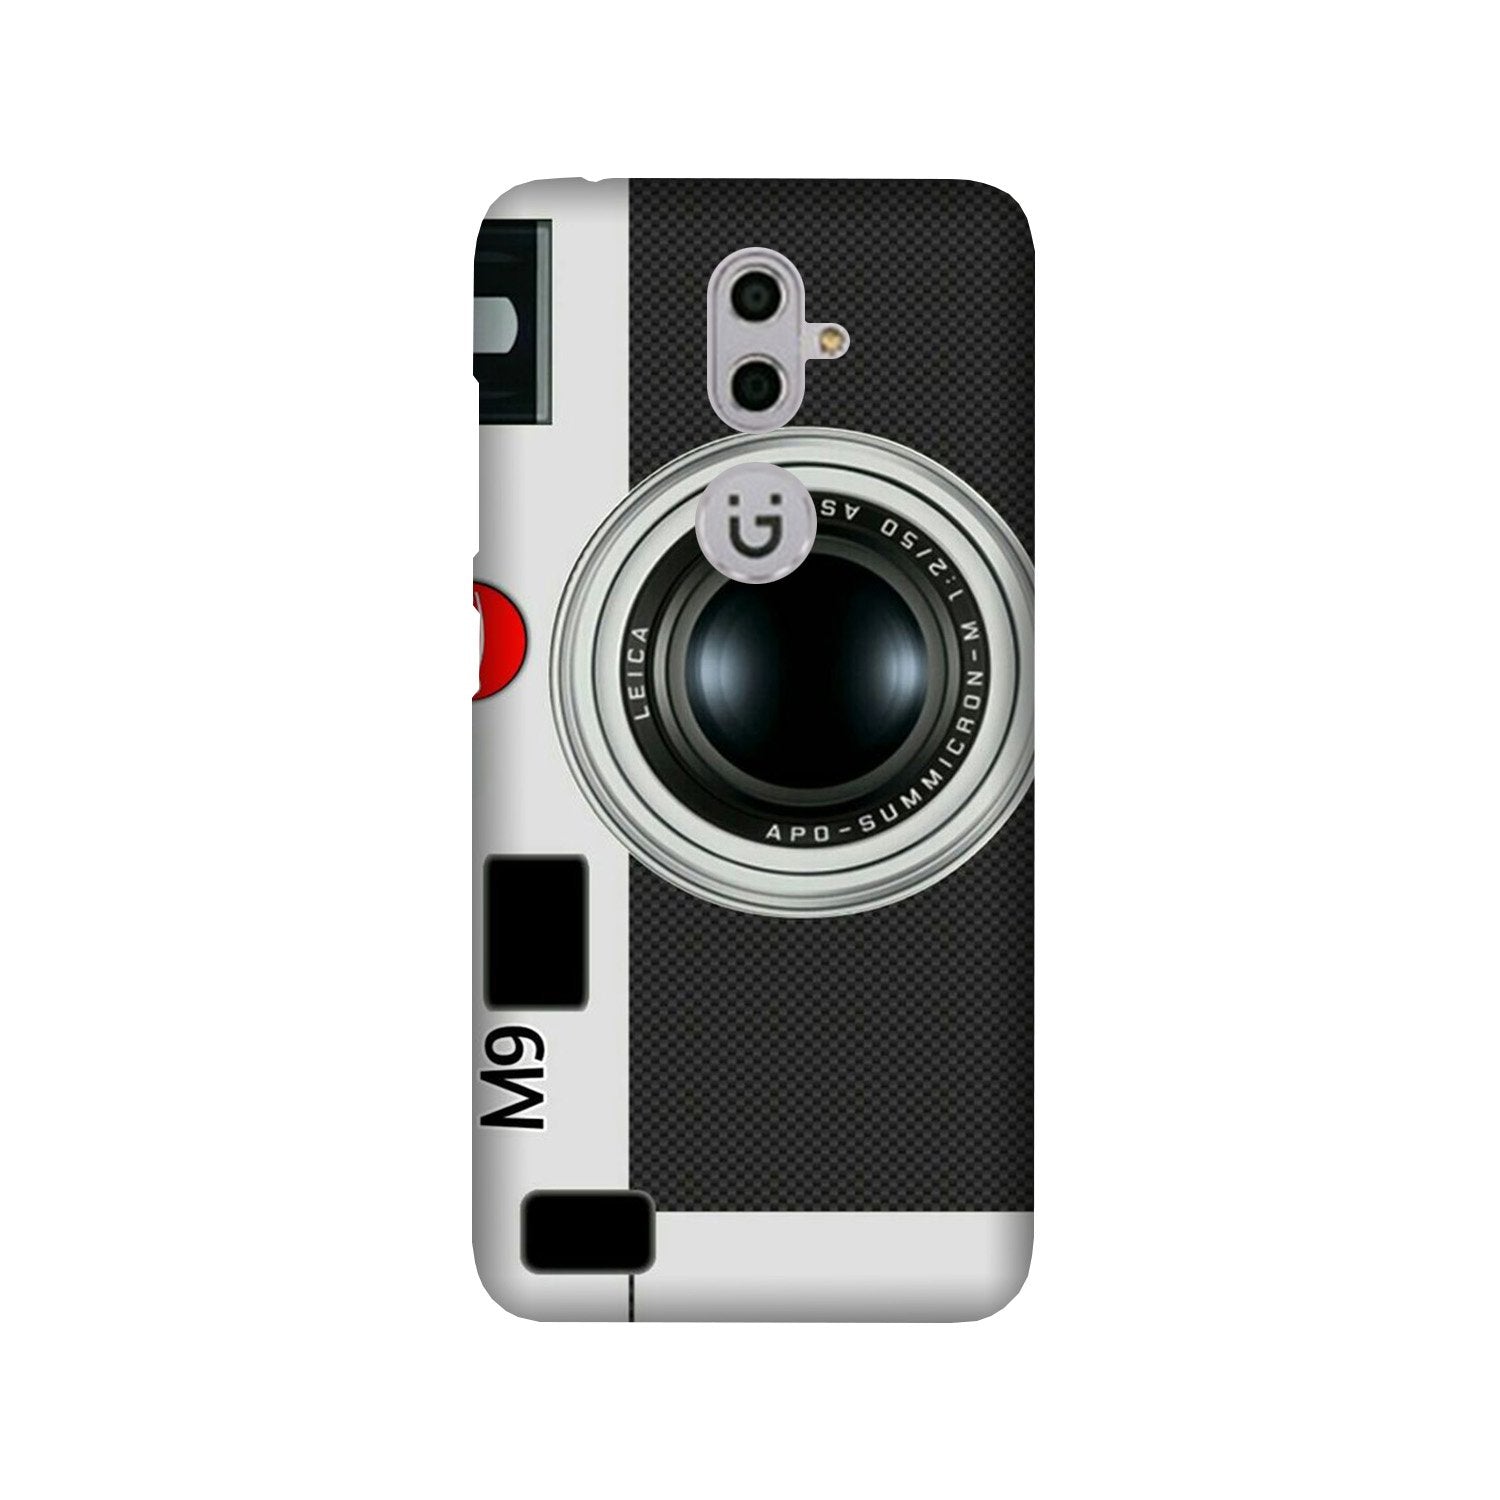 Camera Case for Gionee S9 (Design No. 257)